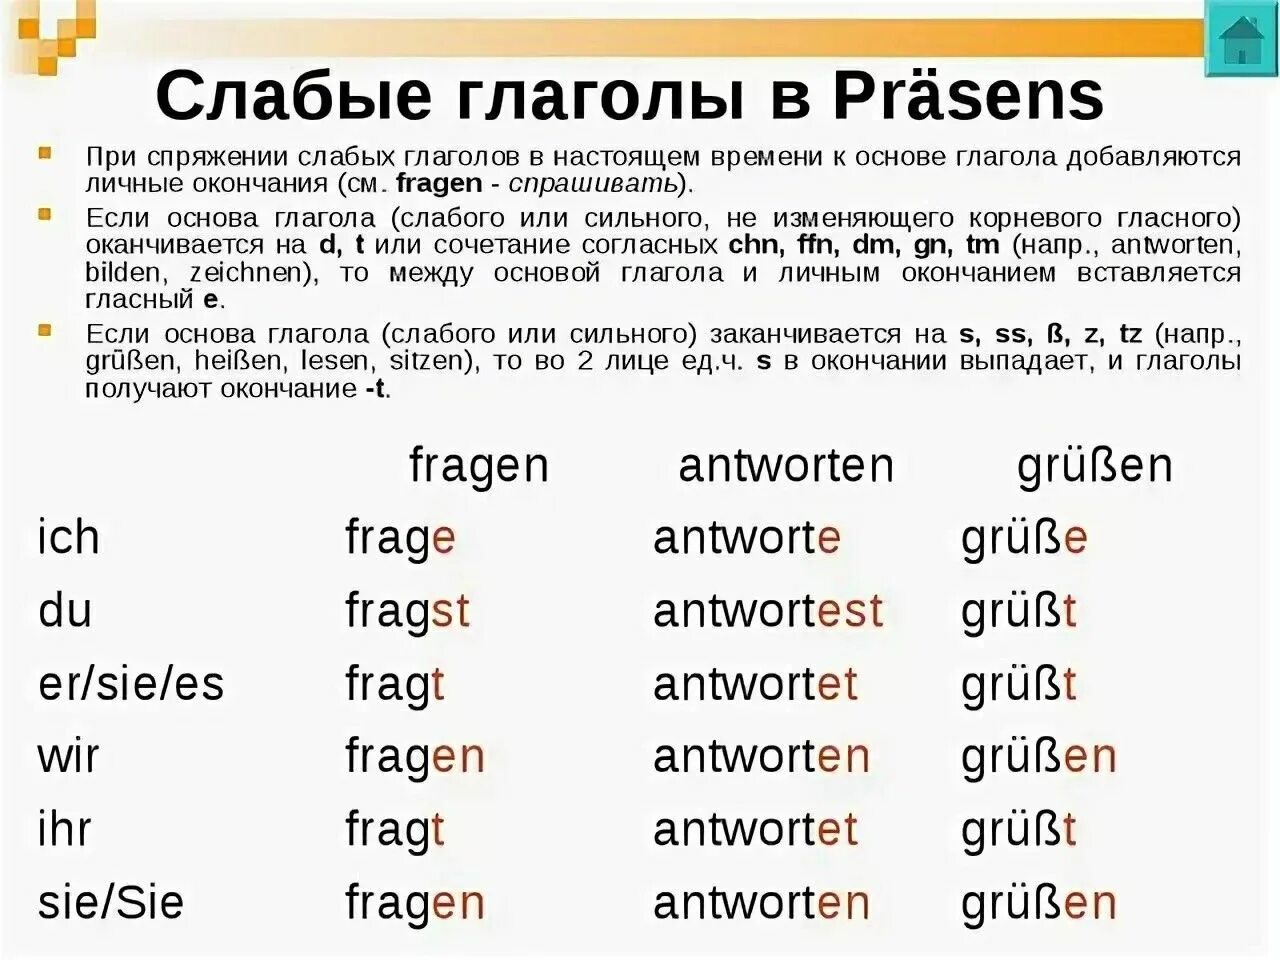 Немецкий язык слабые и сильные. Спряжение глаголов в Презенс в немецком языке. Спряжение слабых глаголов в немецком языке. Спряжение глаголов в Präsens в немецком языке. Präsens в немецком языке сильные глаголы.